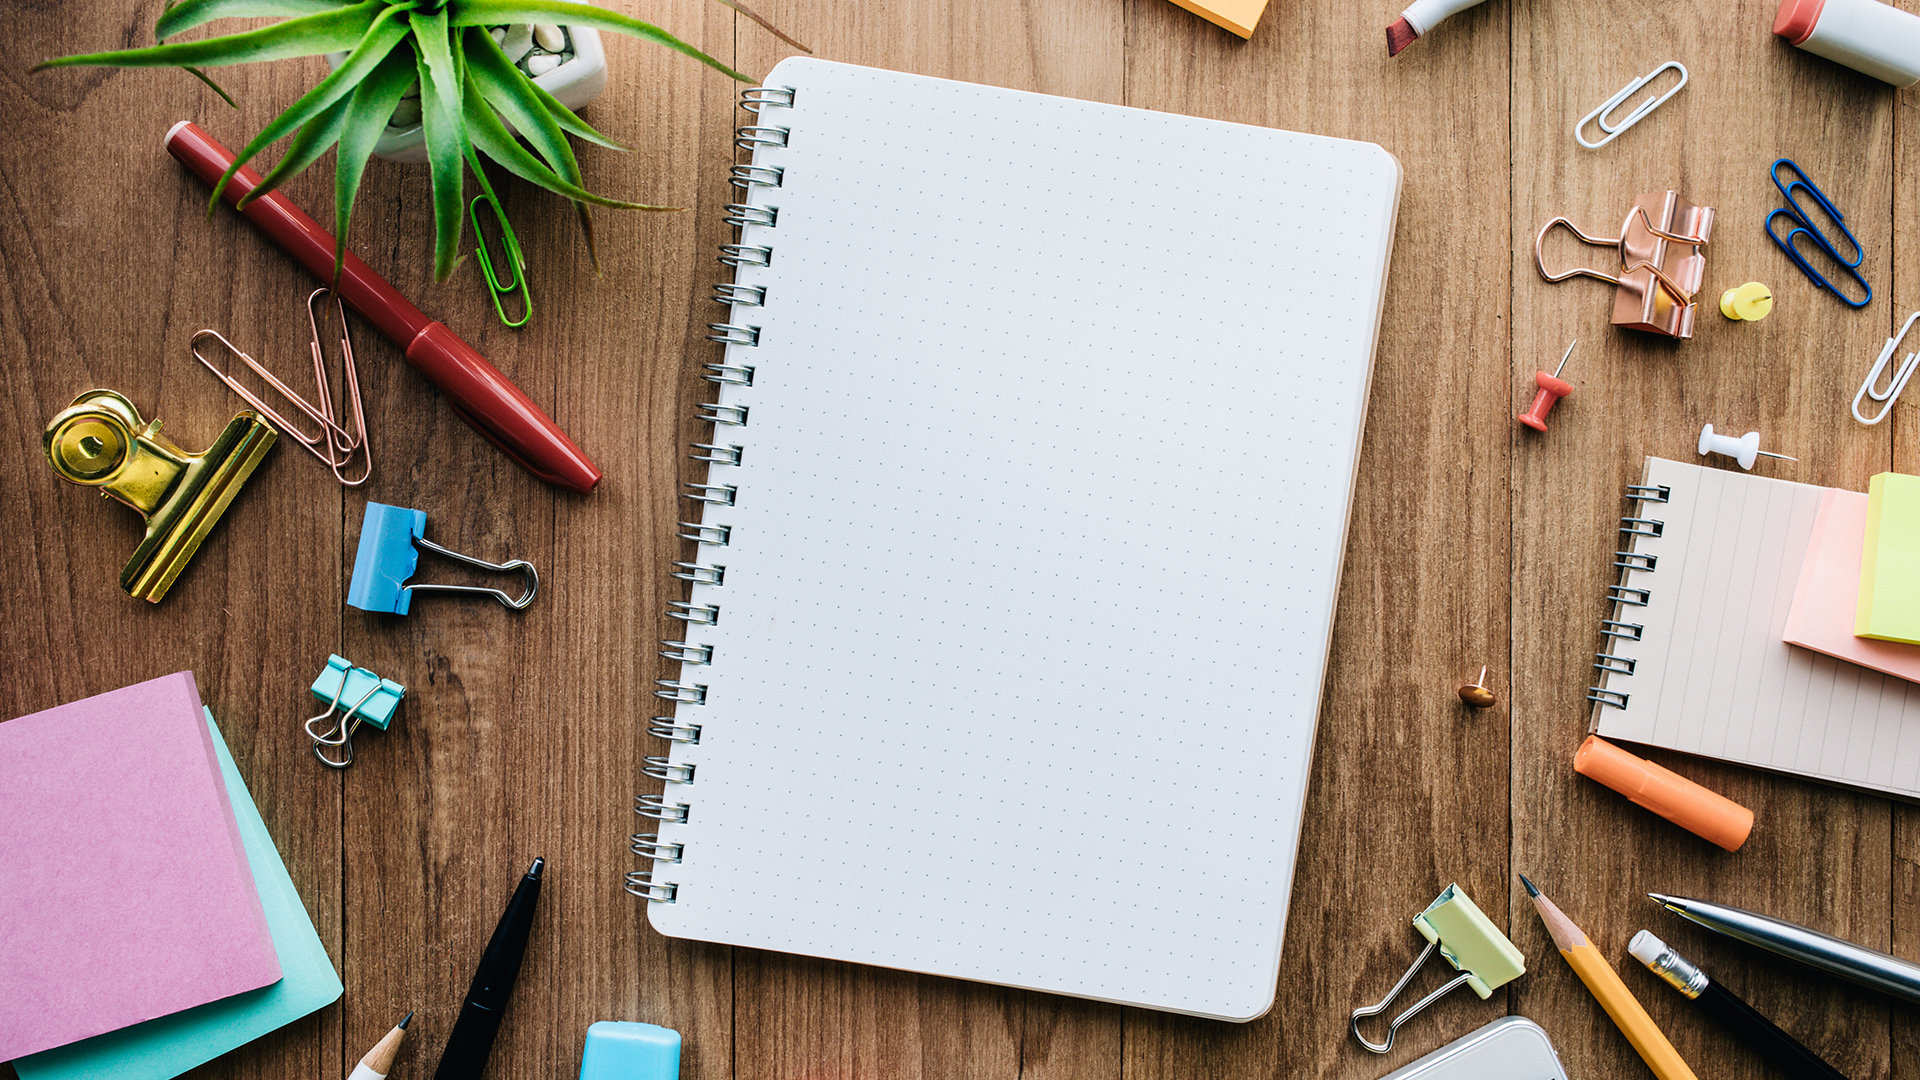 WellbeingHub lessonslearnt blank notebook